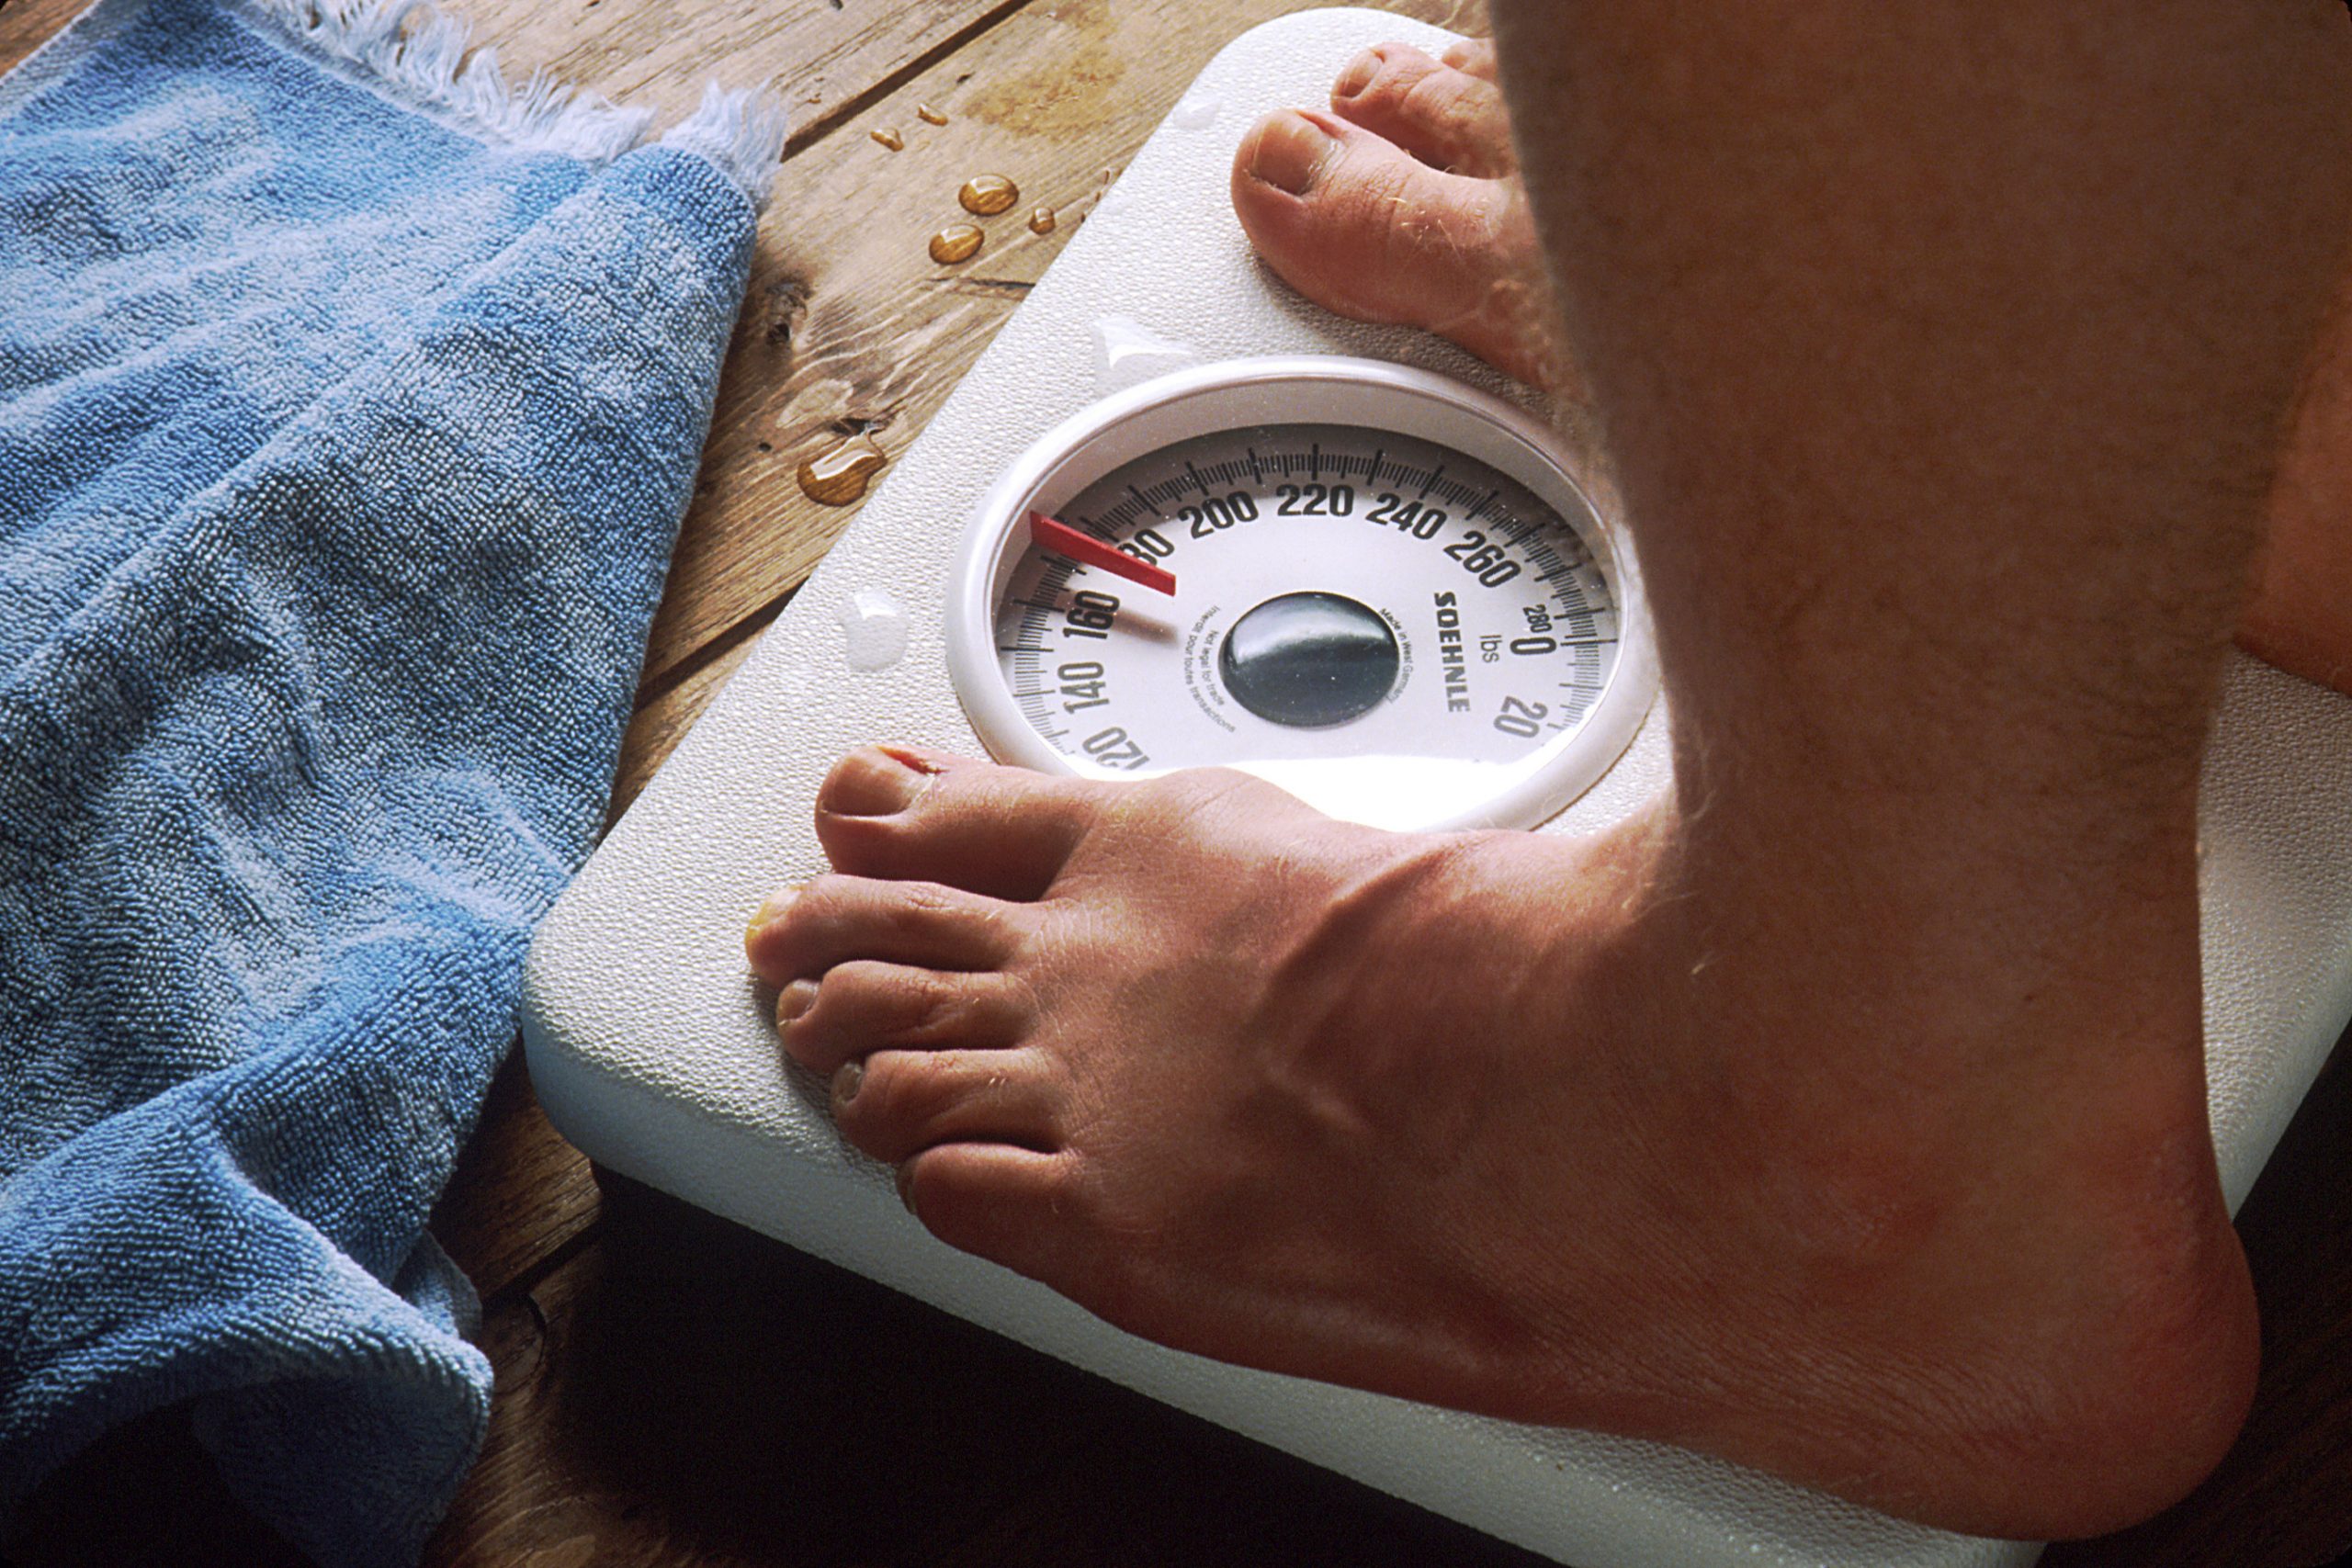 Νέο φάρμακο για την παχυσαρκία οδηγεί σε απώλεια βάρους 24 κιλών – Τι έδειξε έρευνα